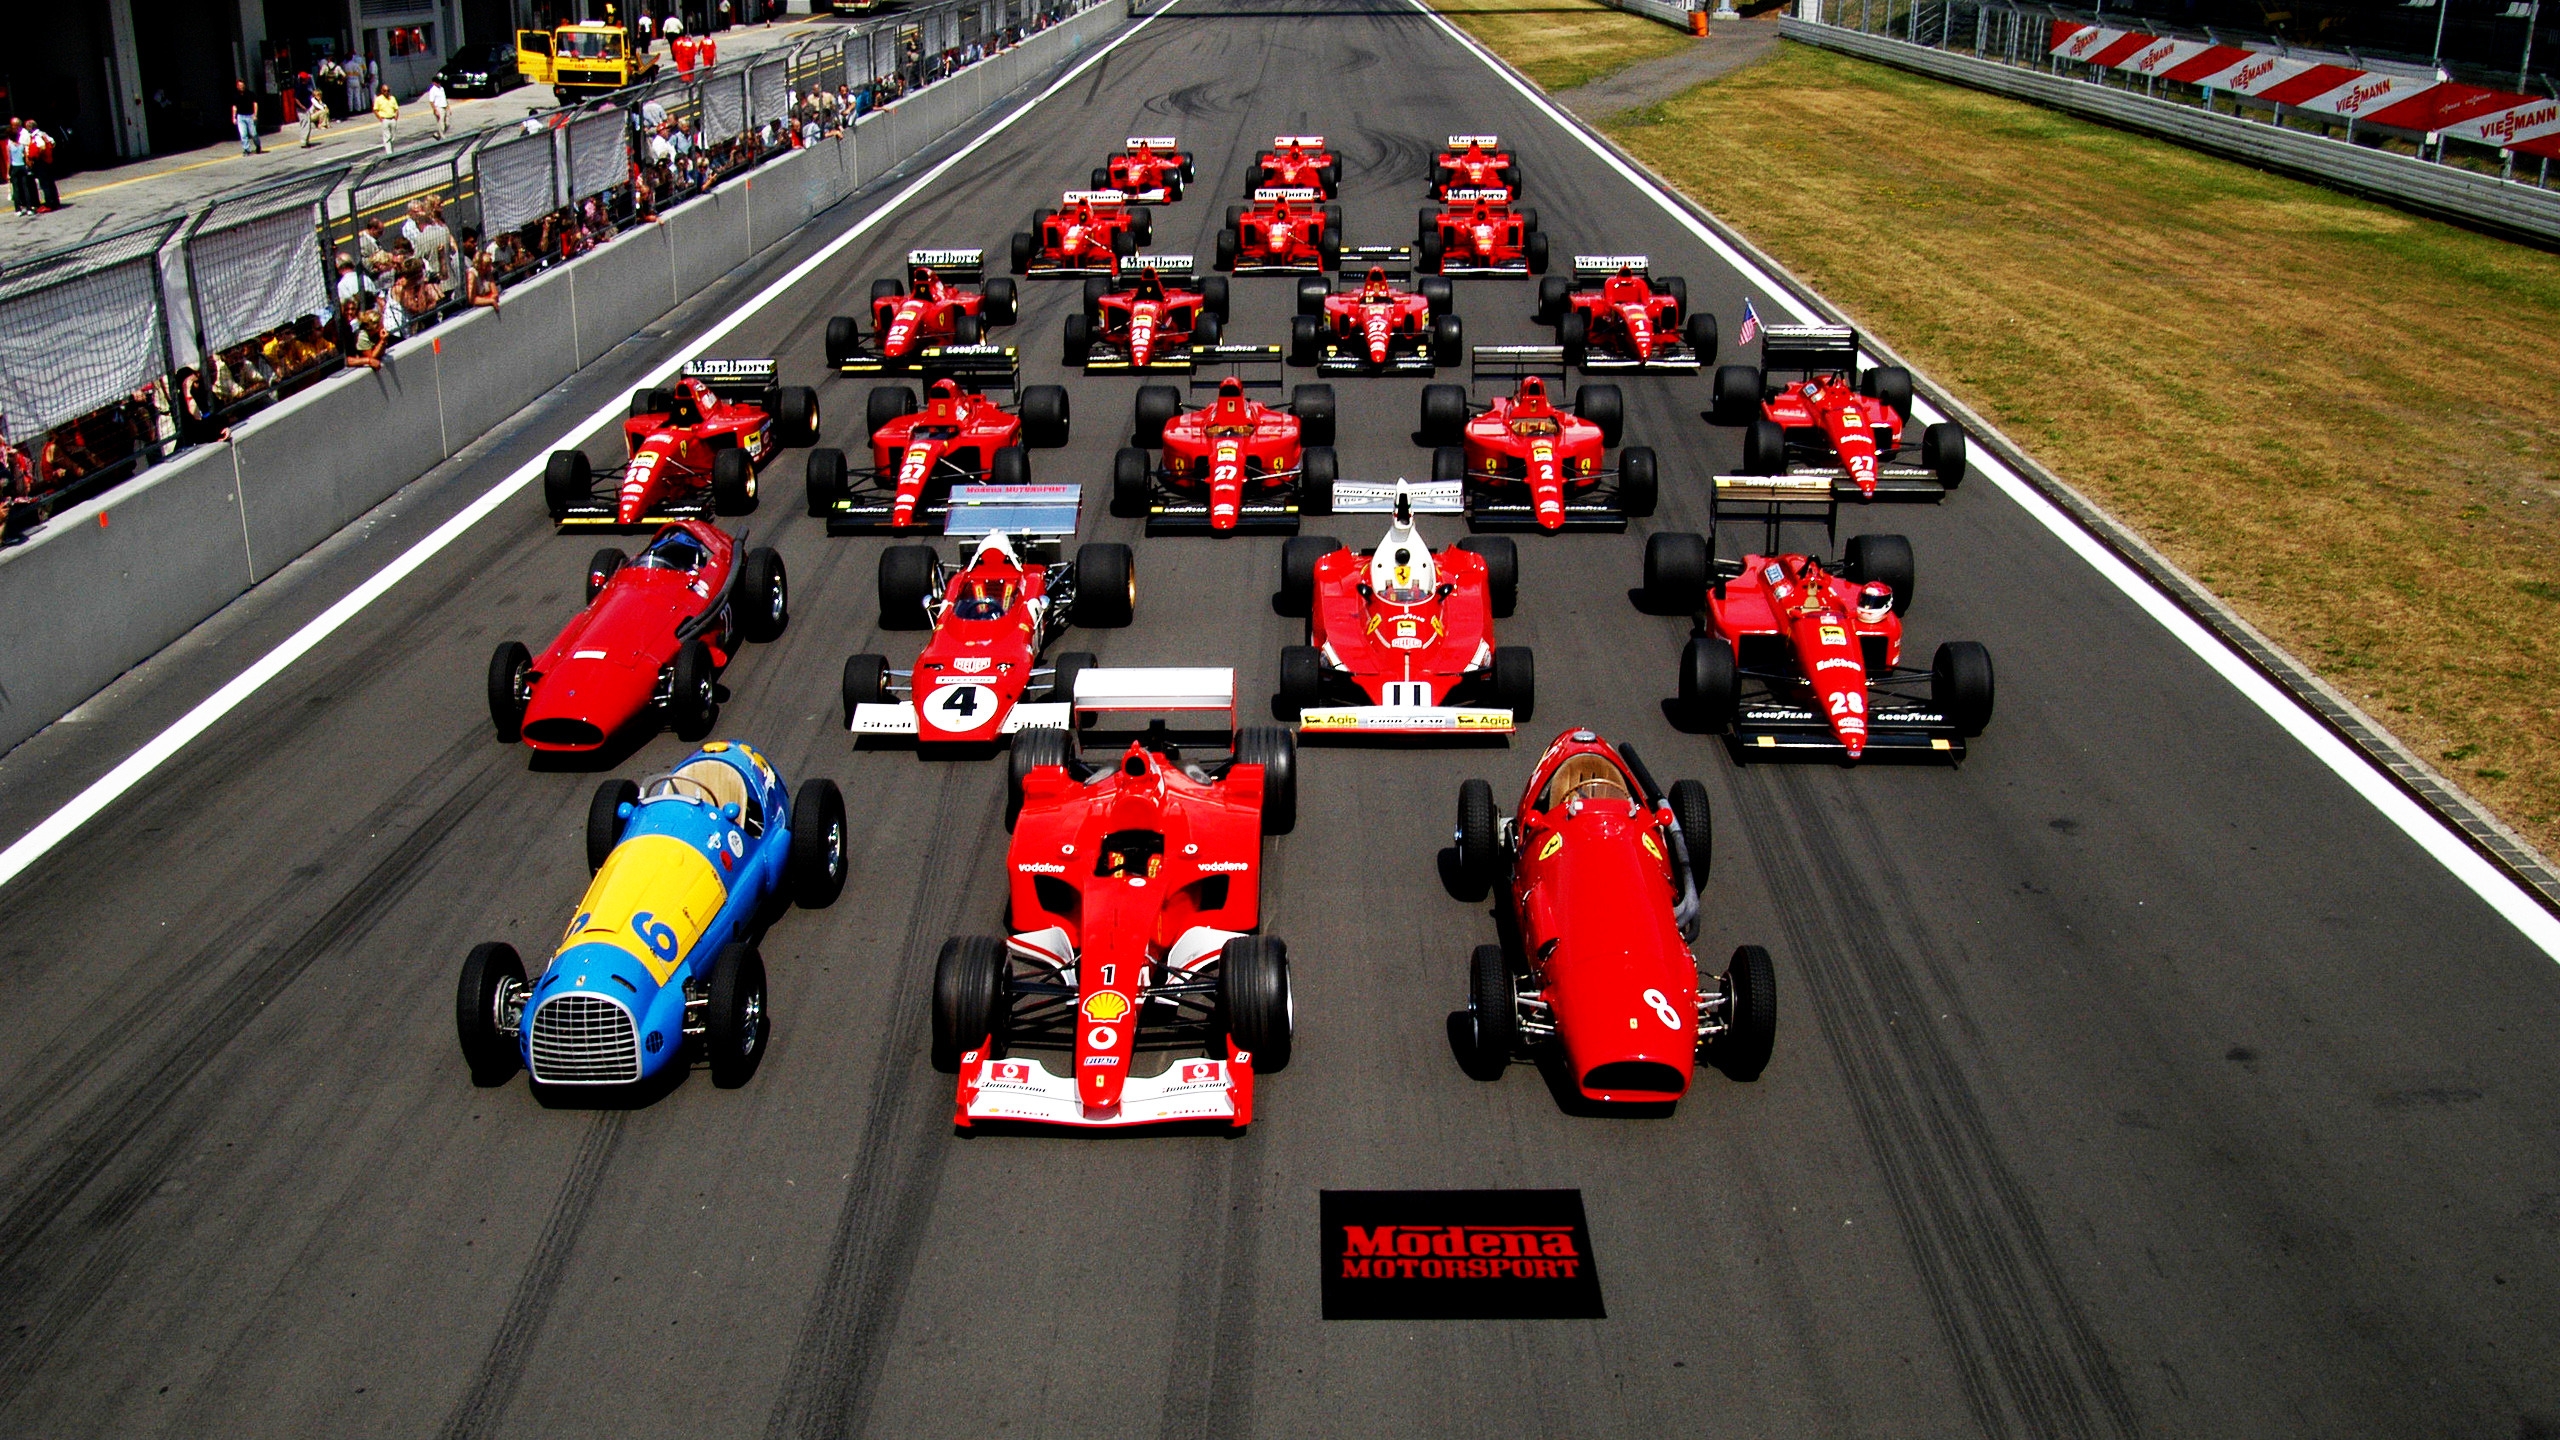 Ferrari Formula 1 Start for 2560x1440 HDTV resolution